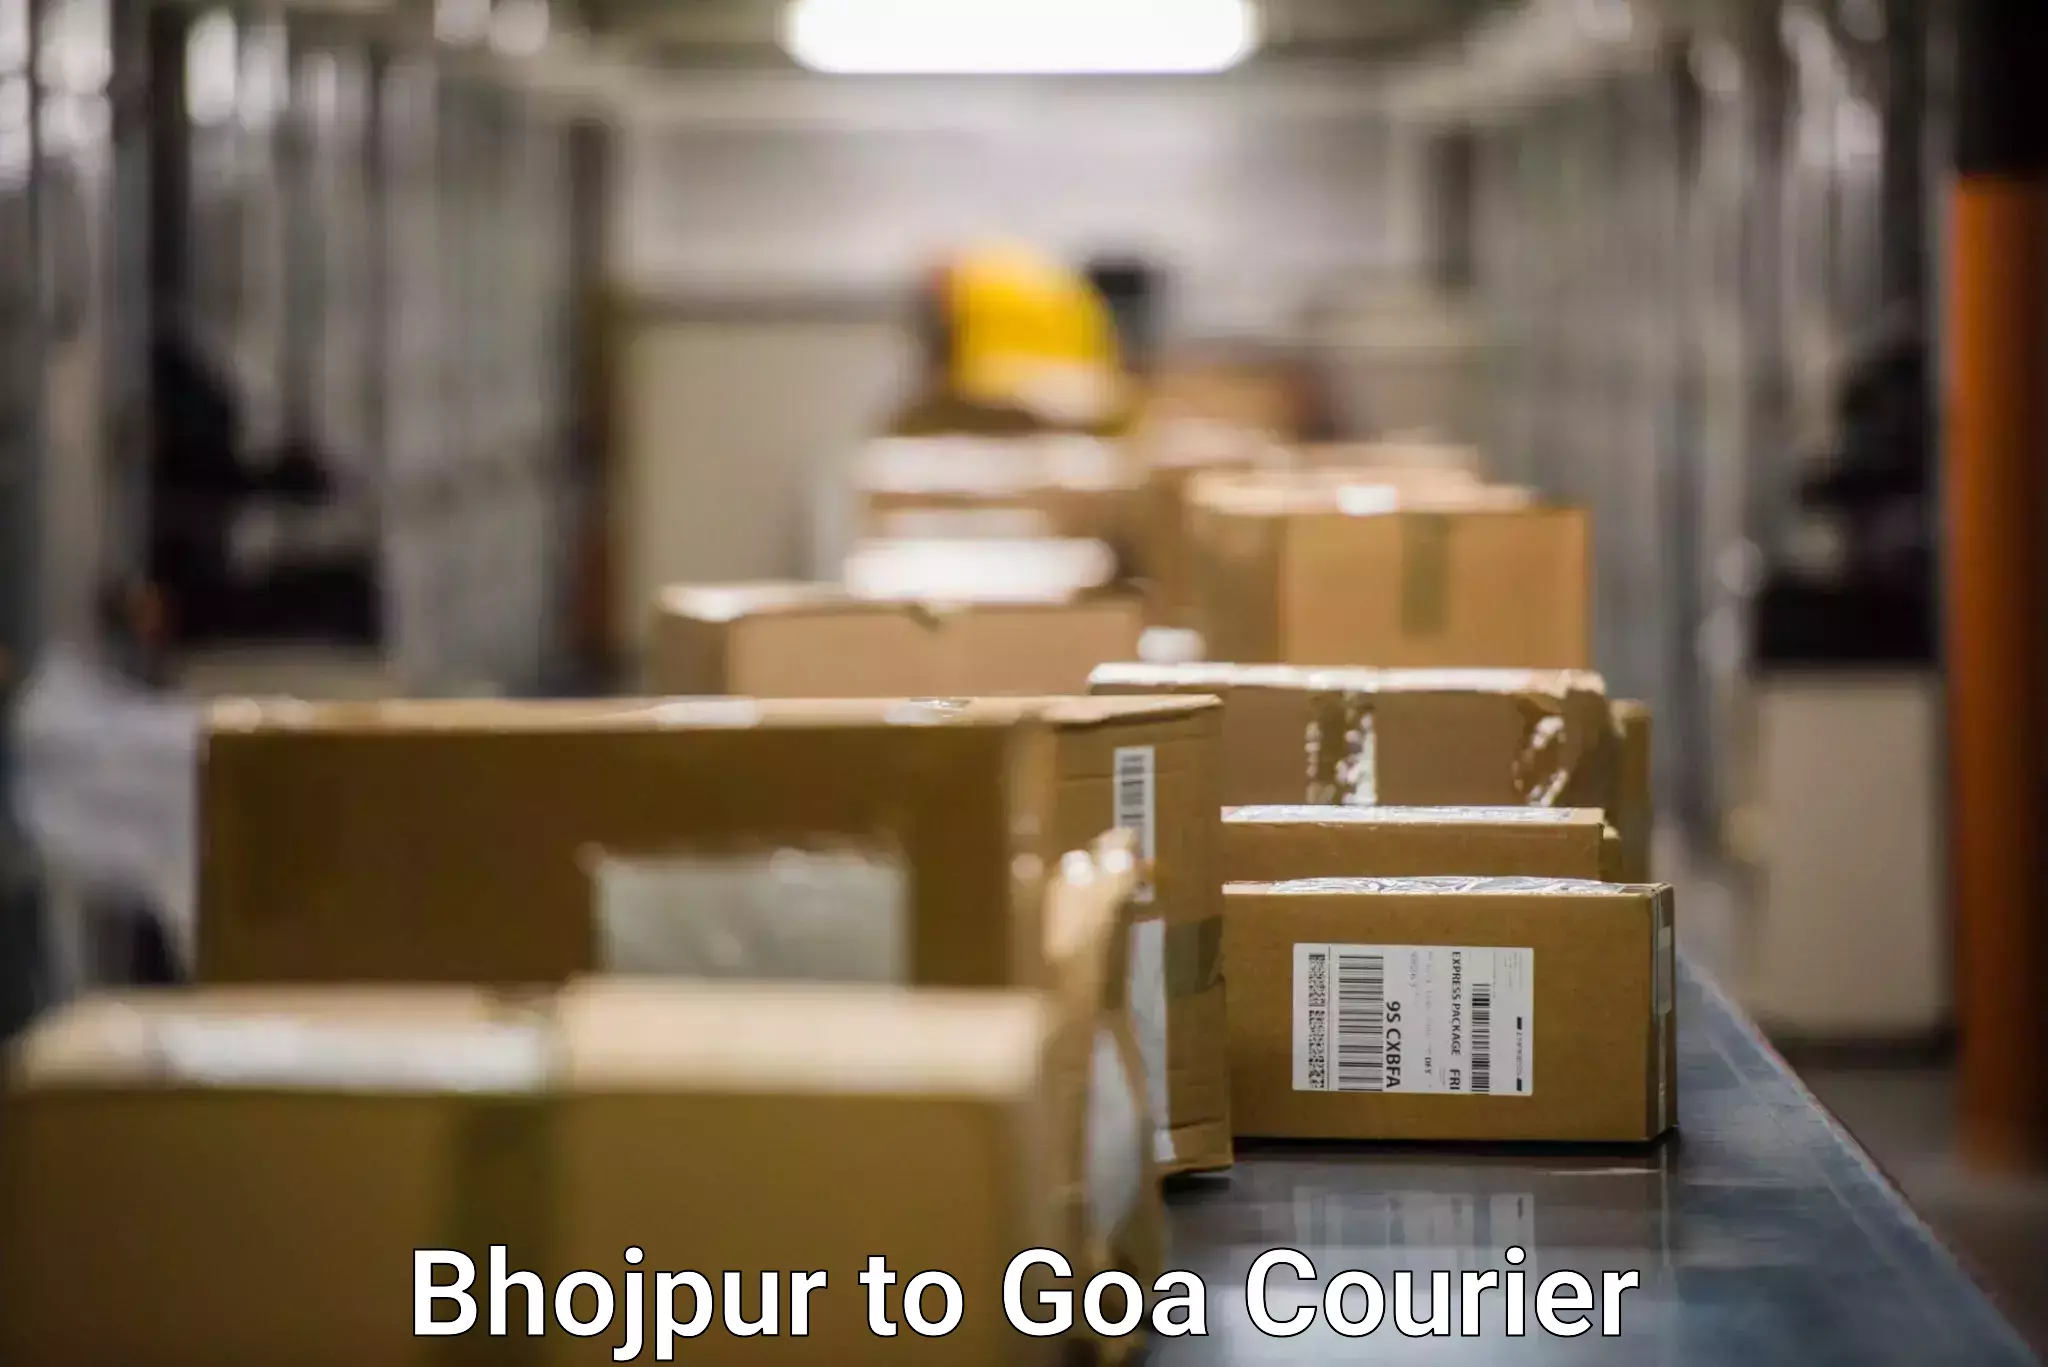 Cargo delivery service Bhojpur to Ponda